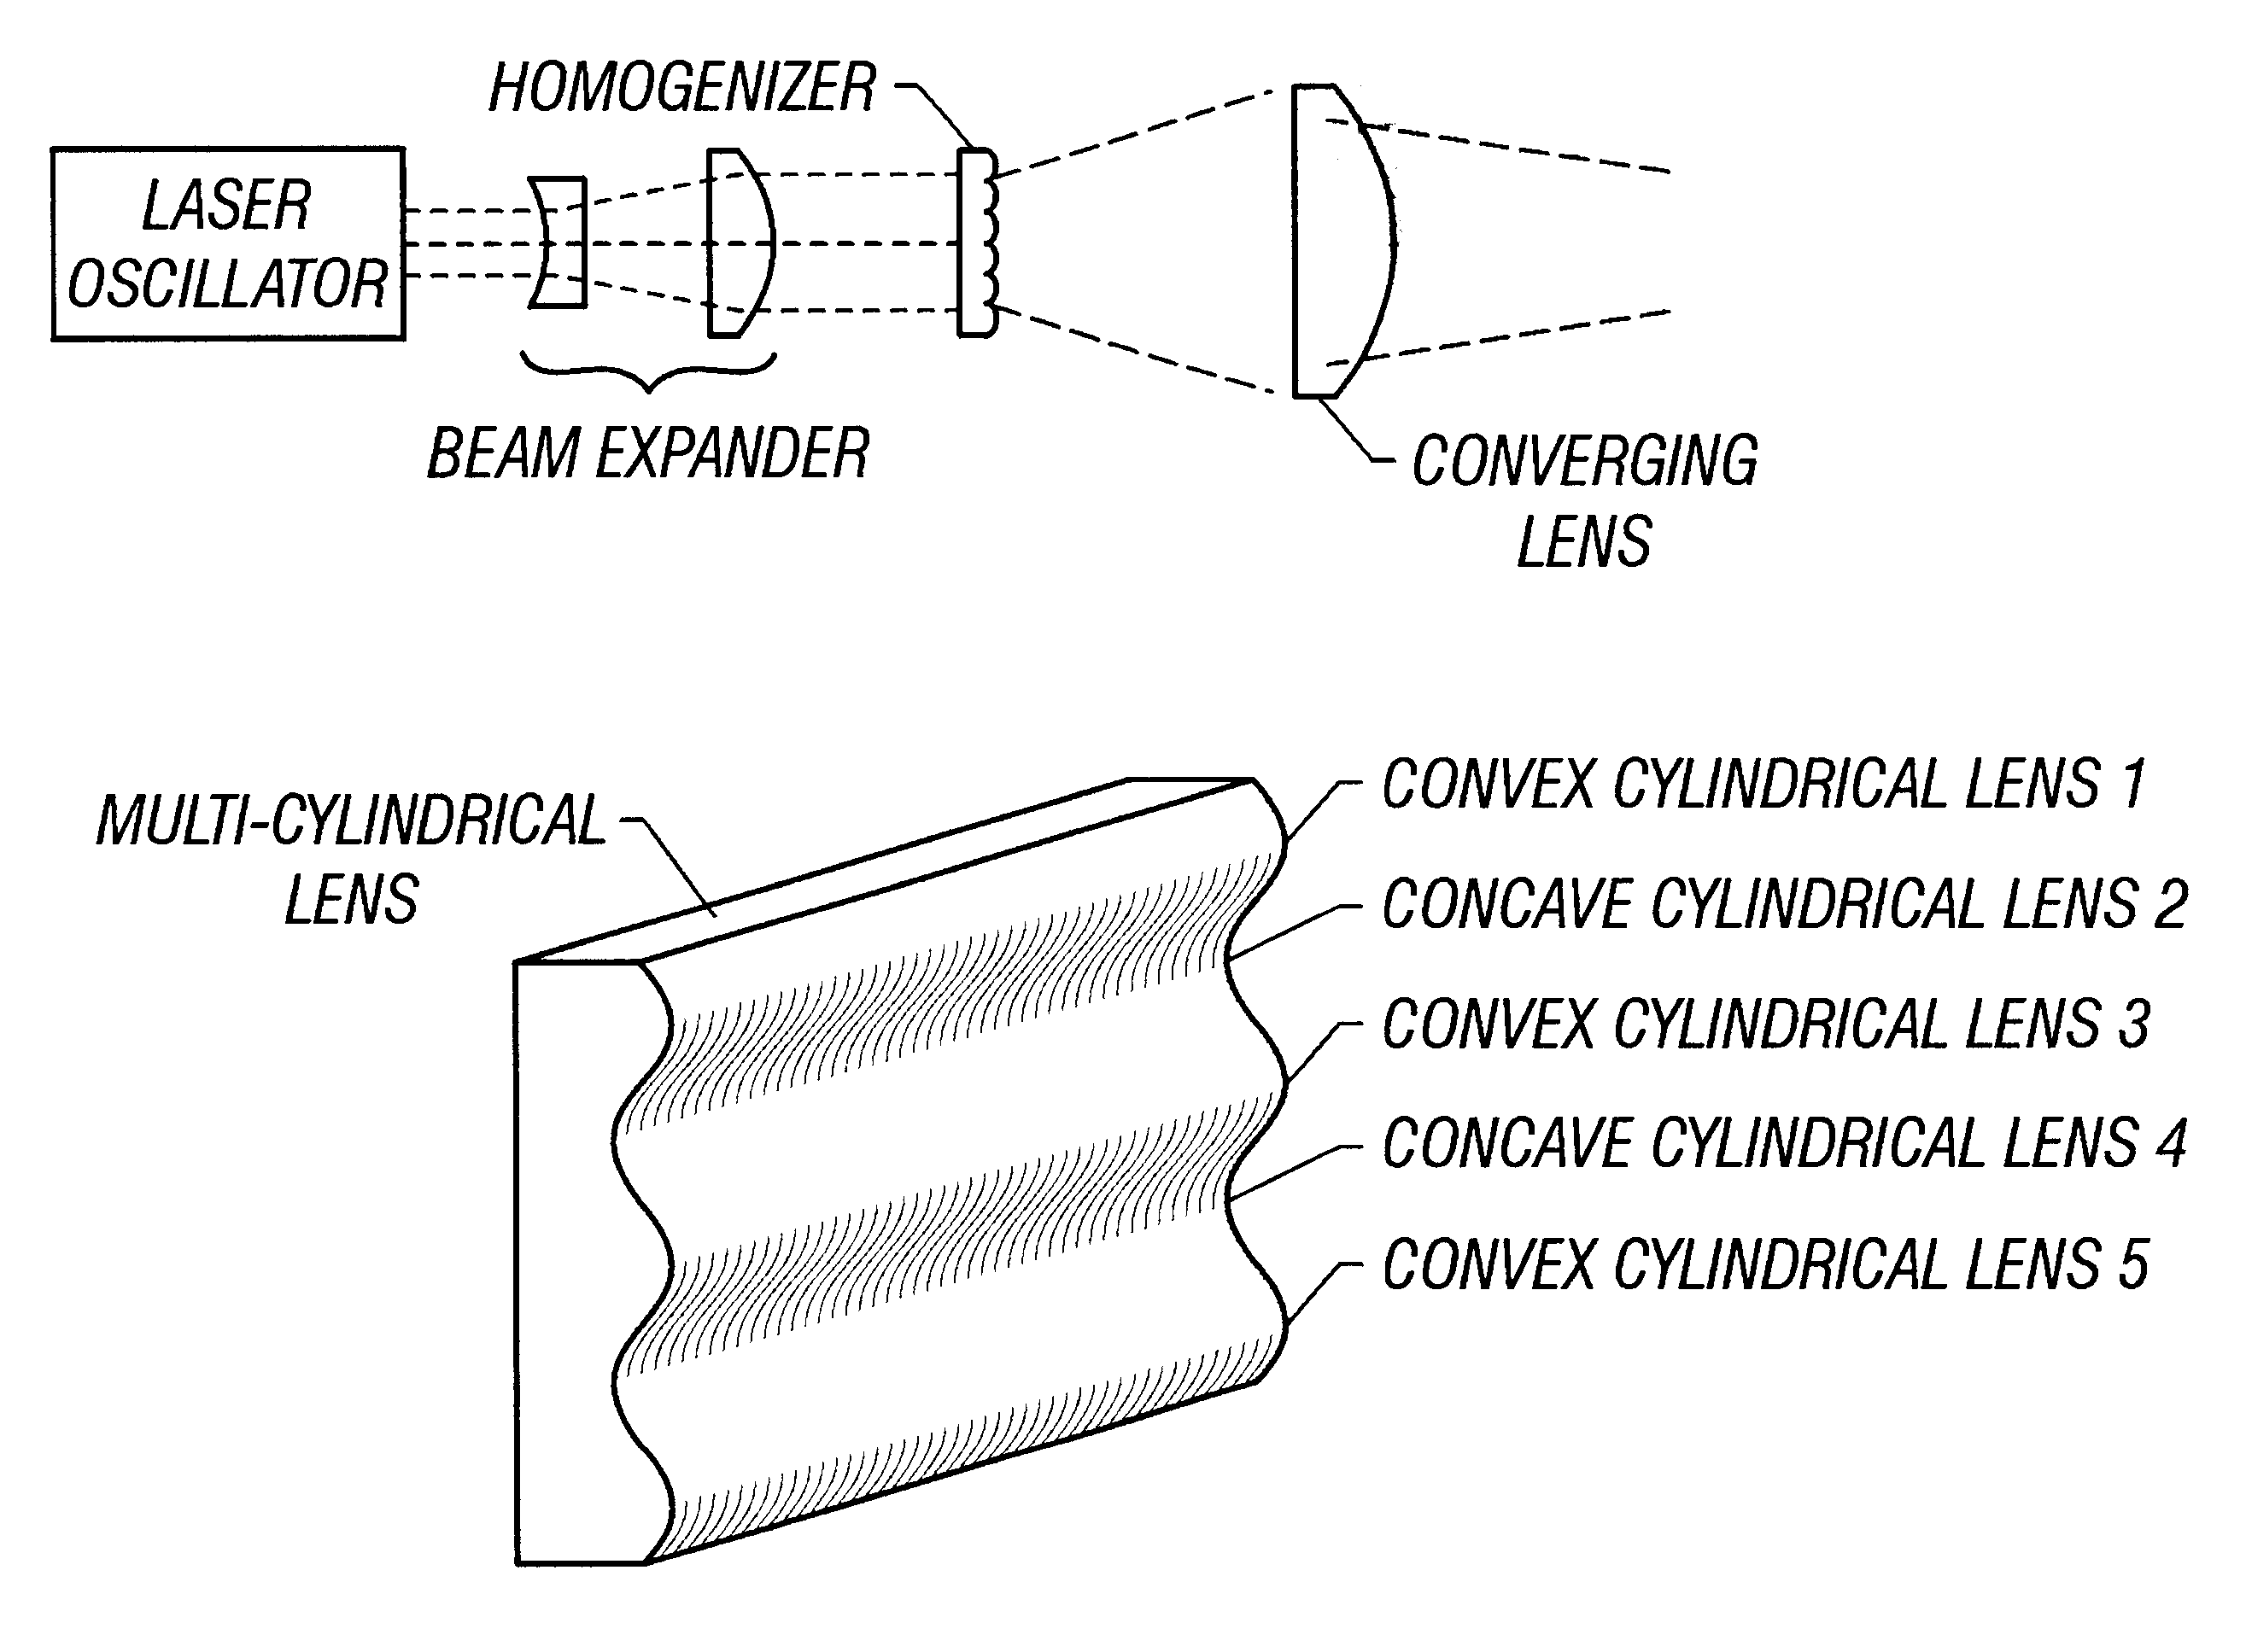 Laser optical apparatus